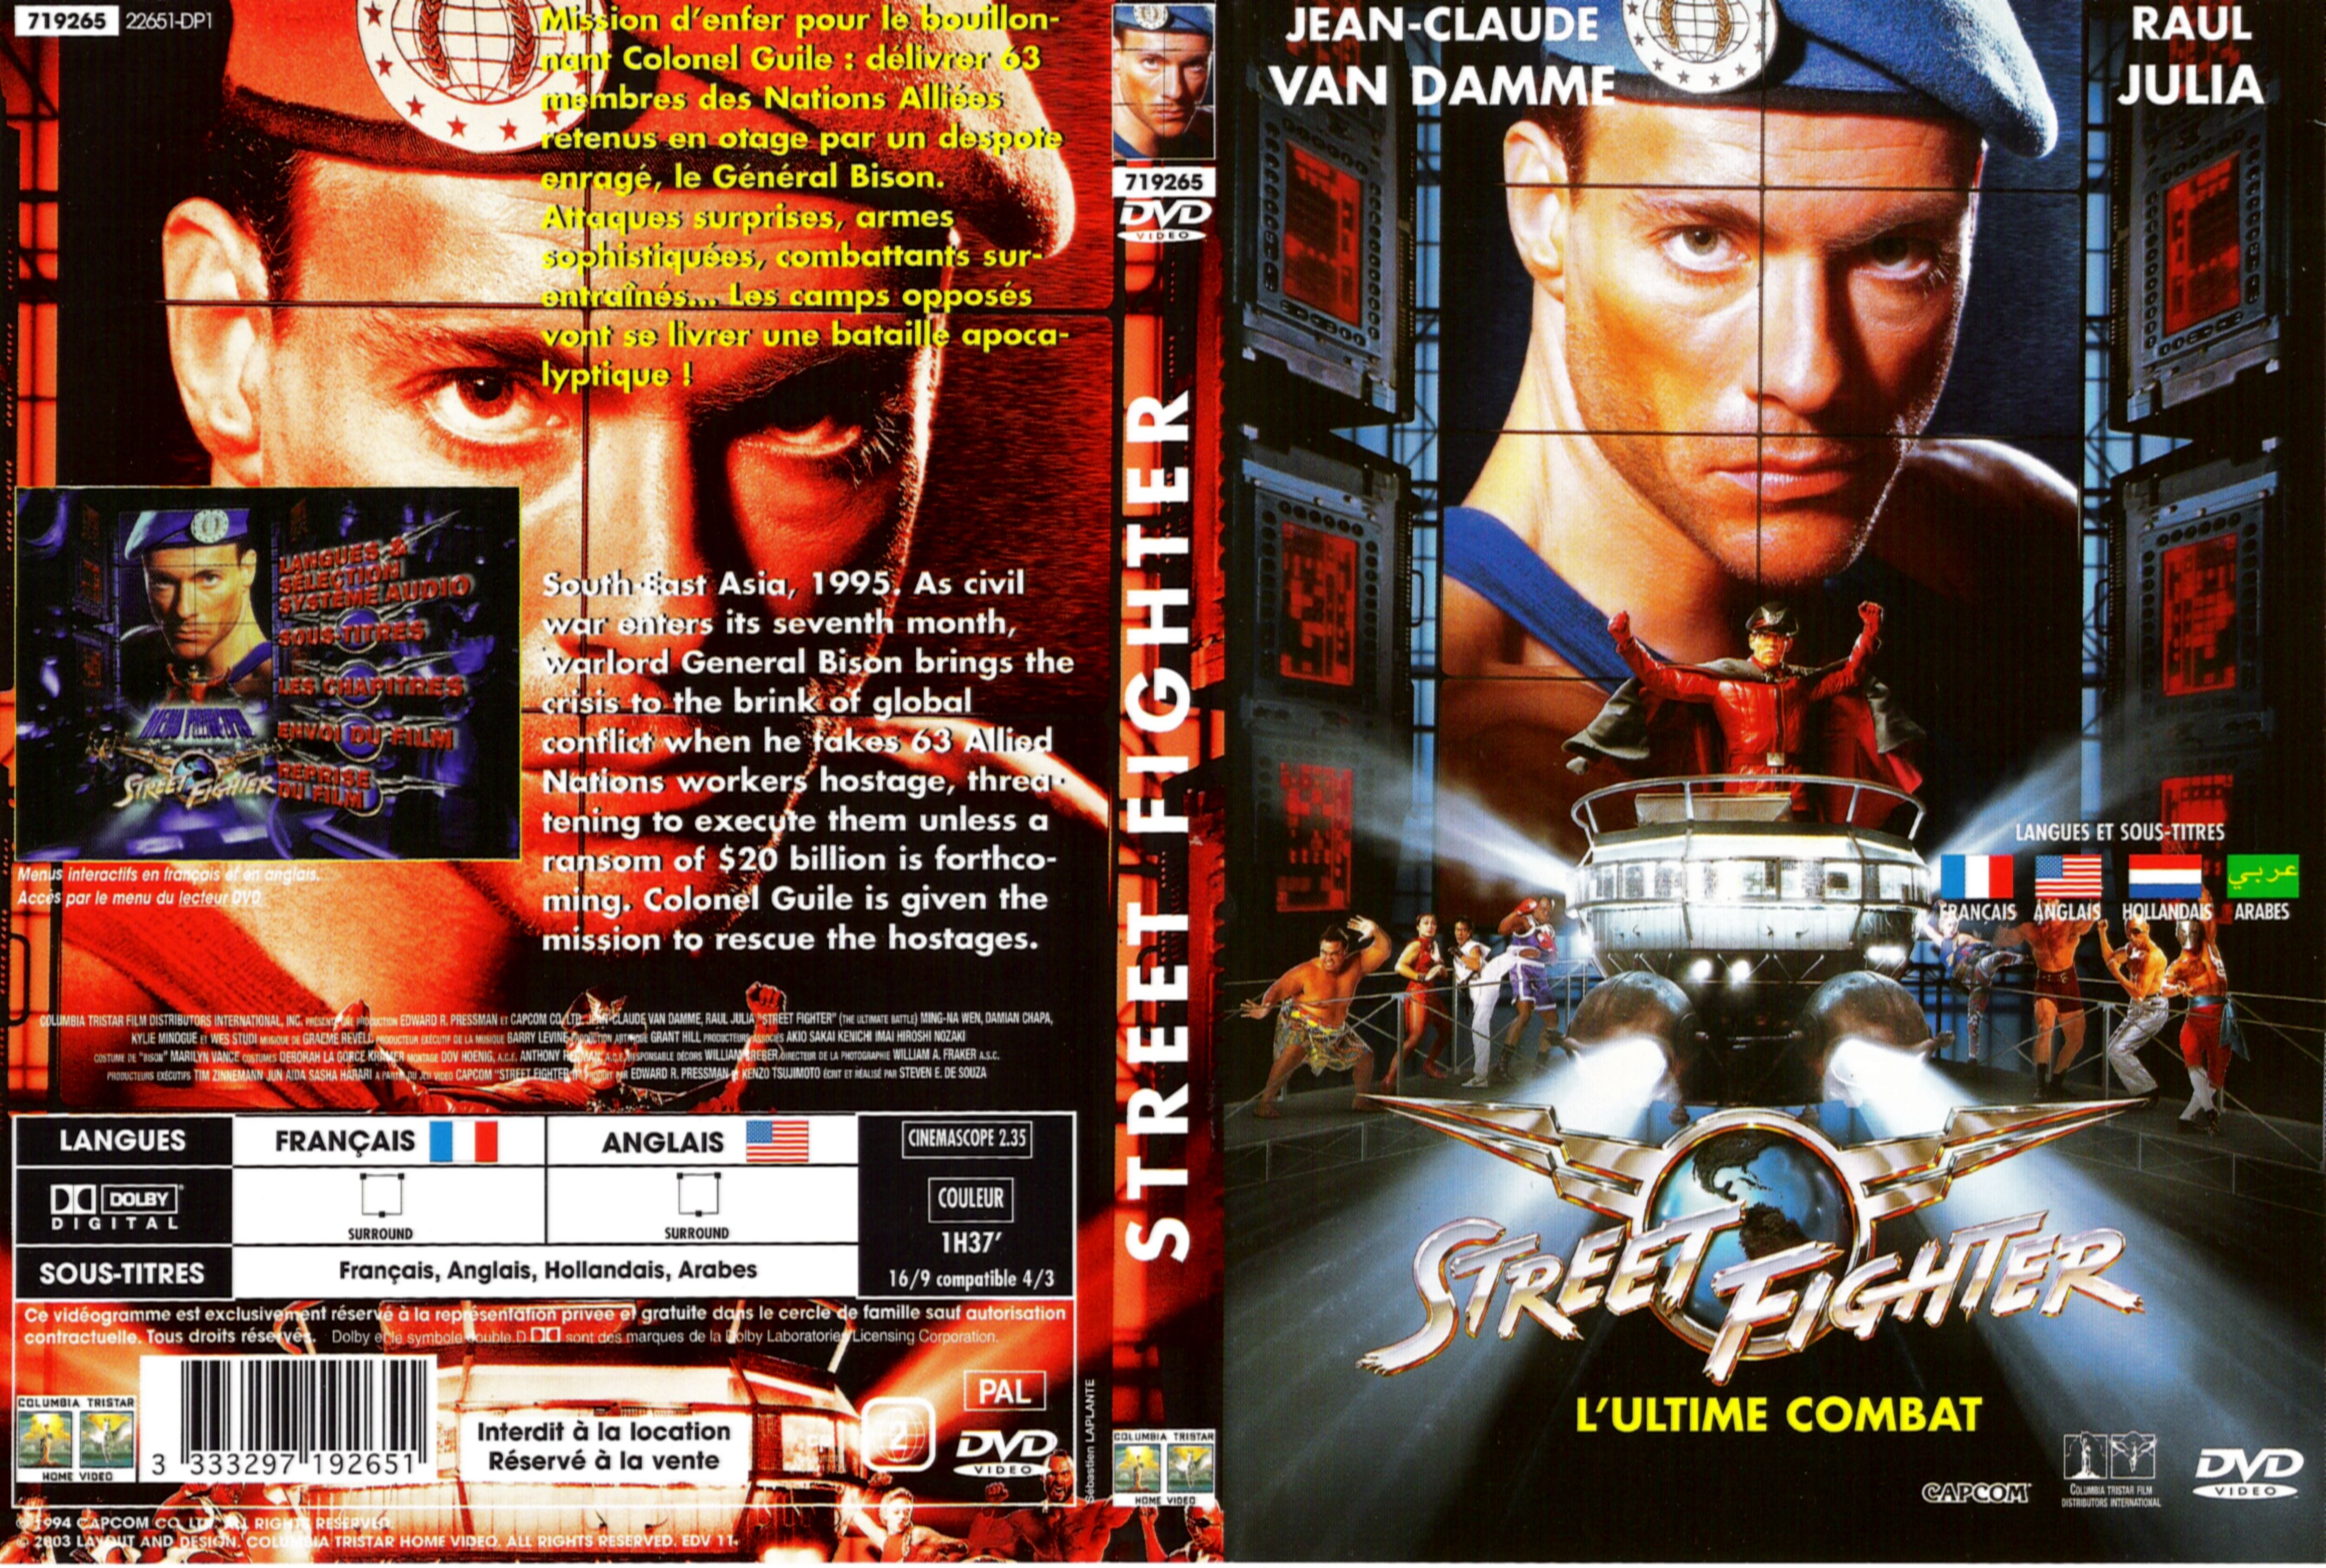 Jaquette DVD Street fighter v2